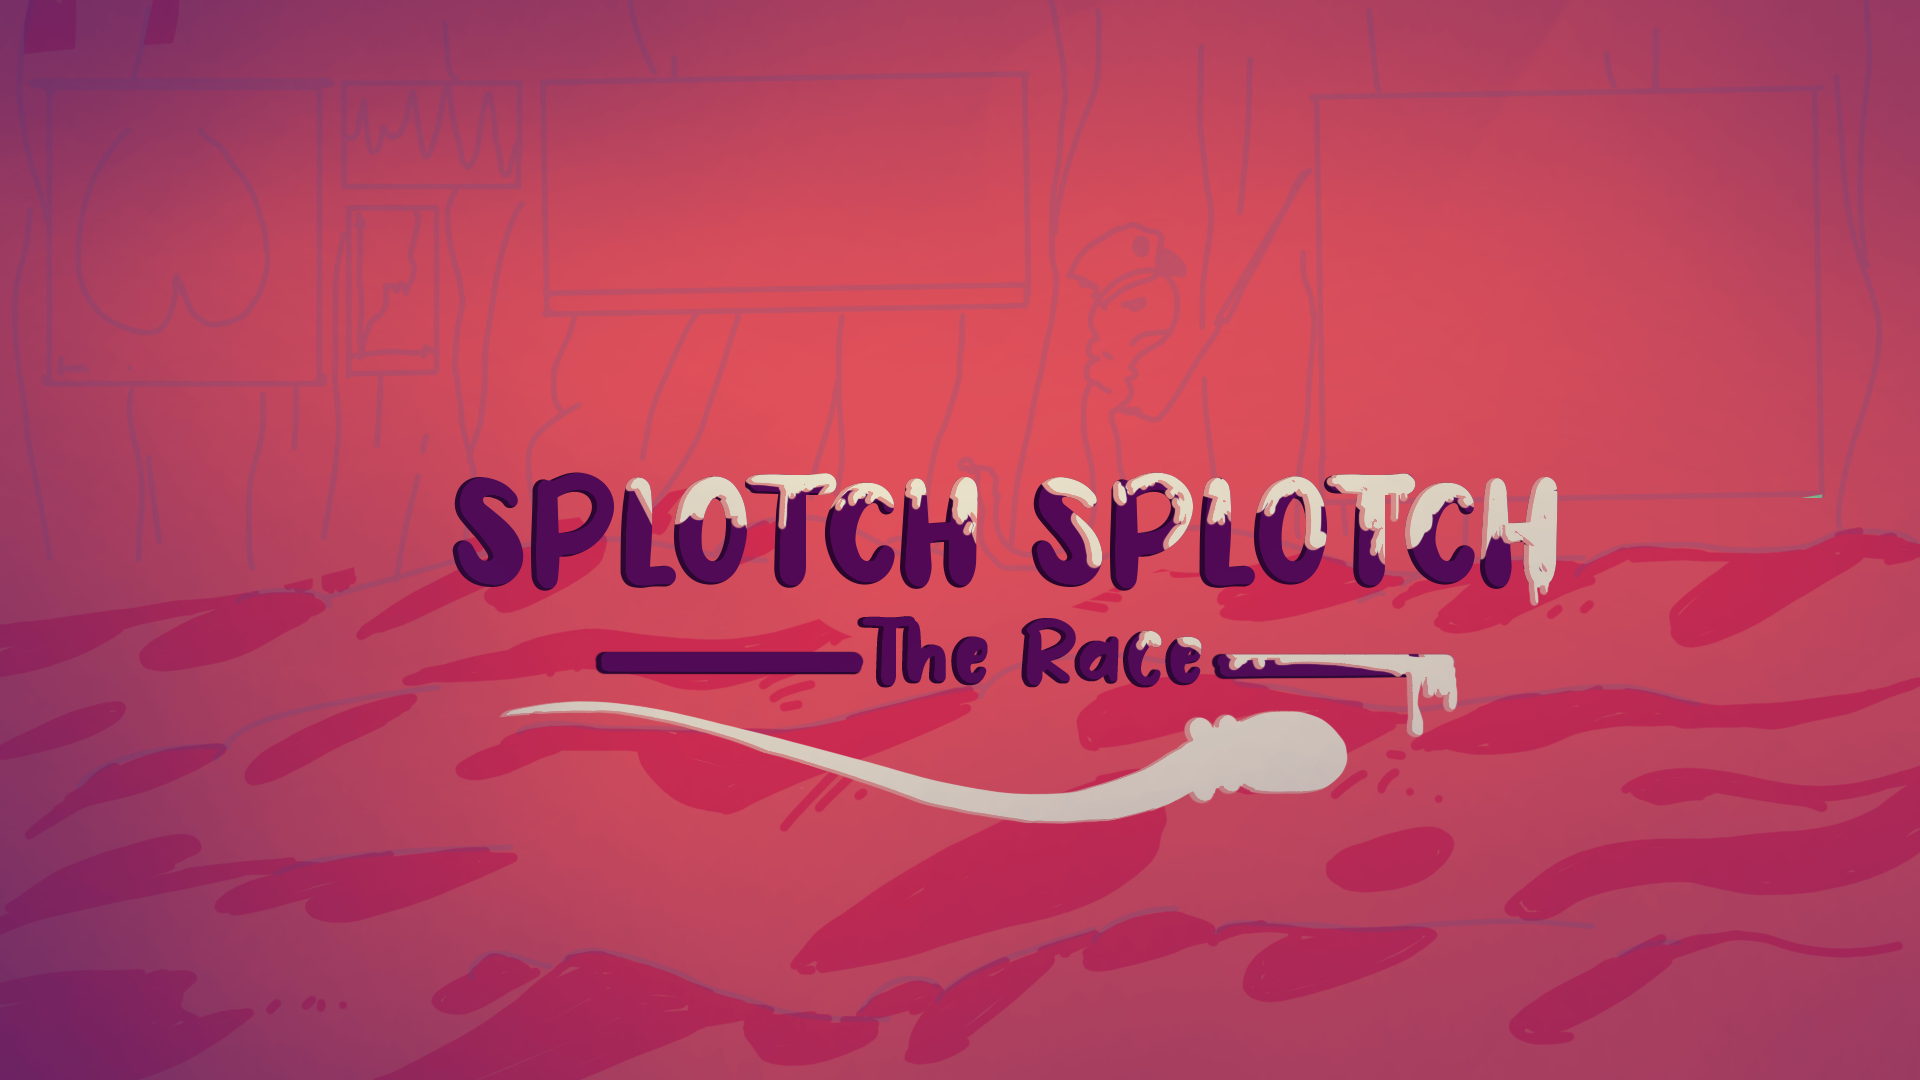 Splotch Splotch - The Race